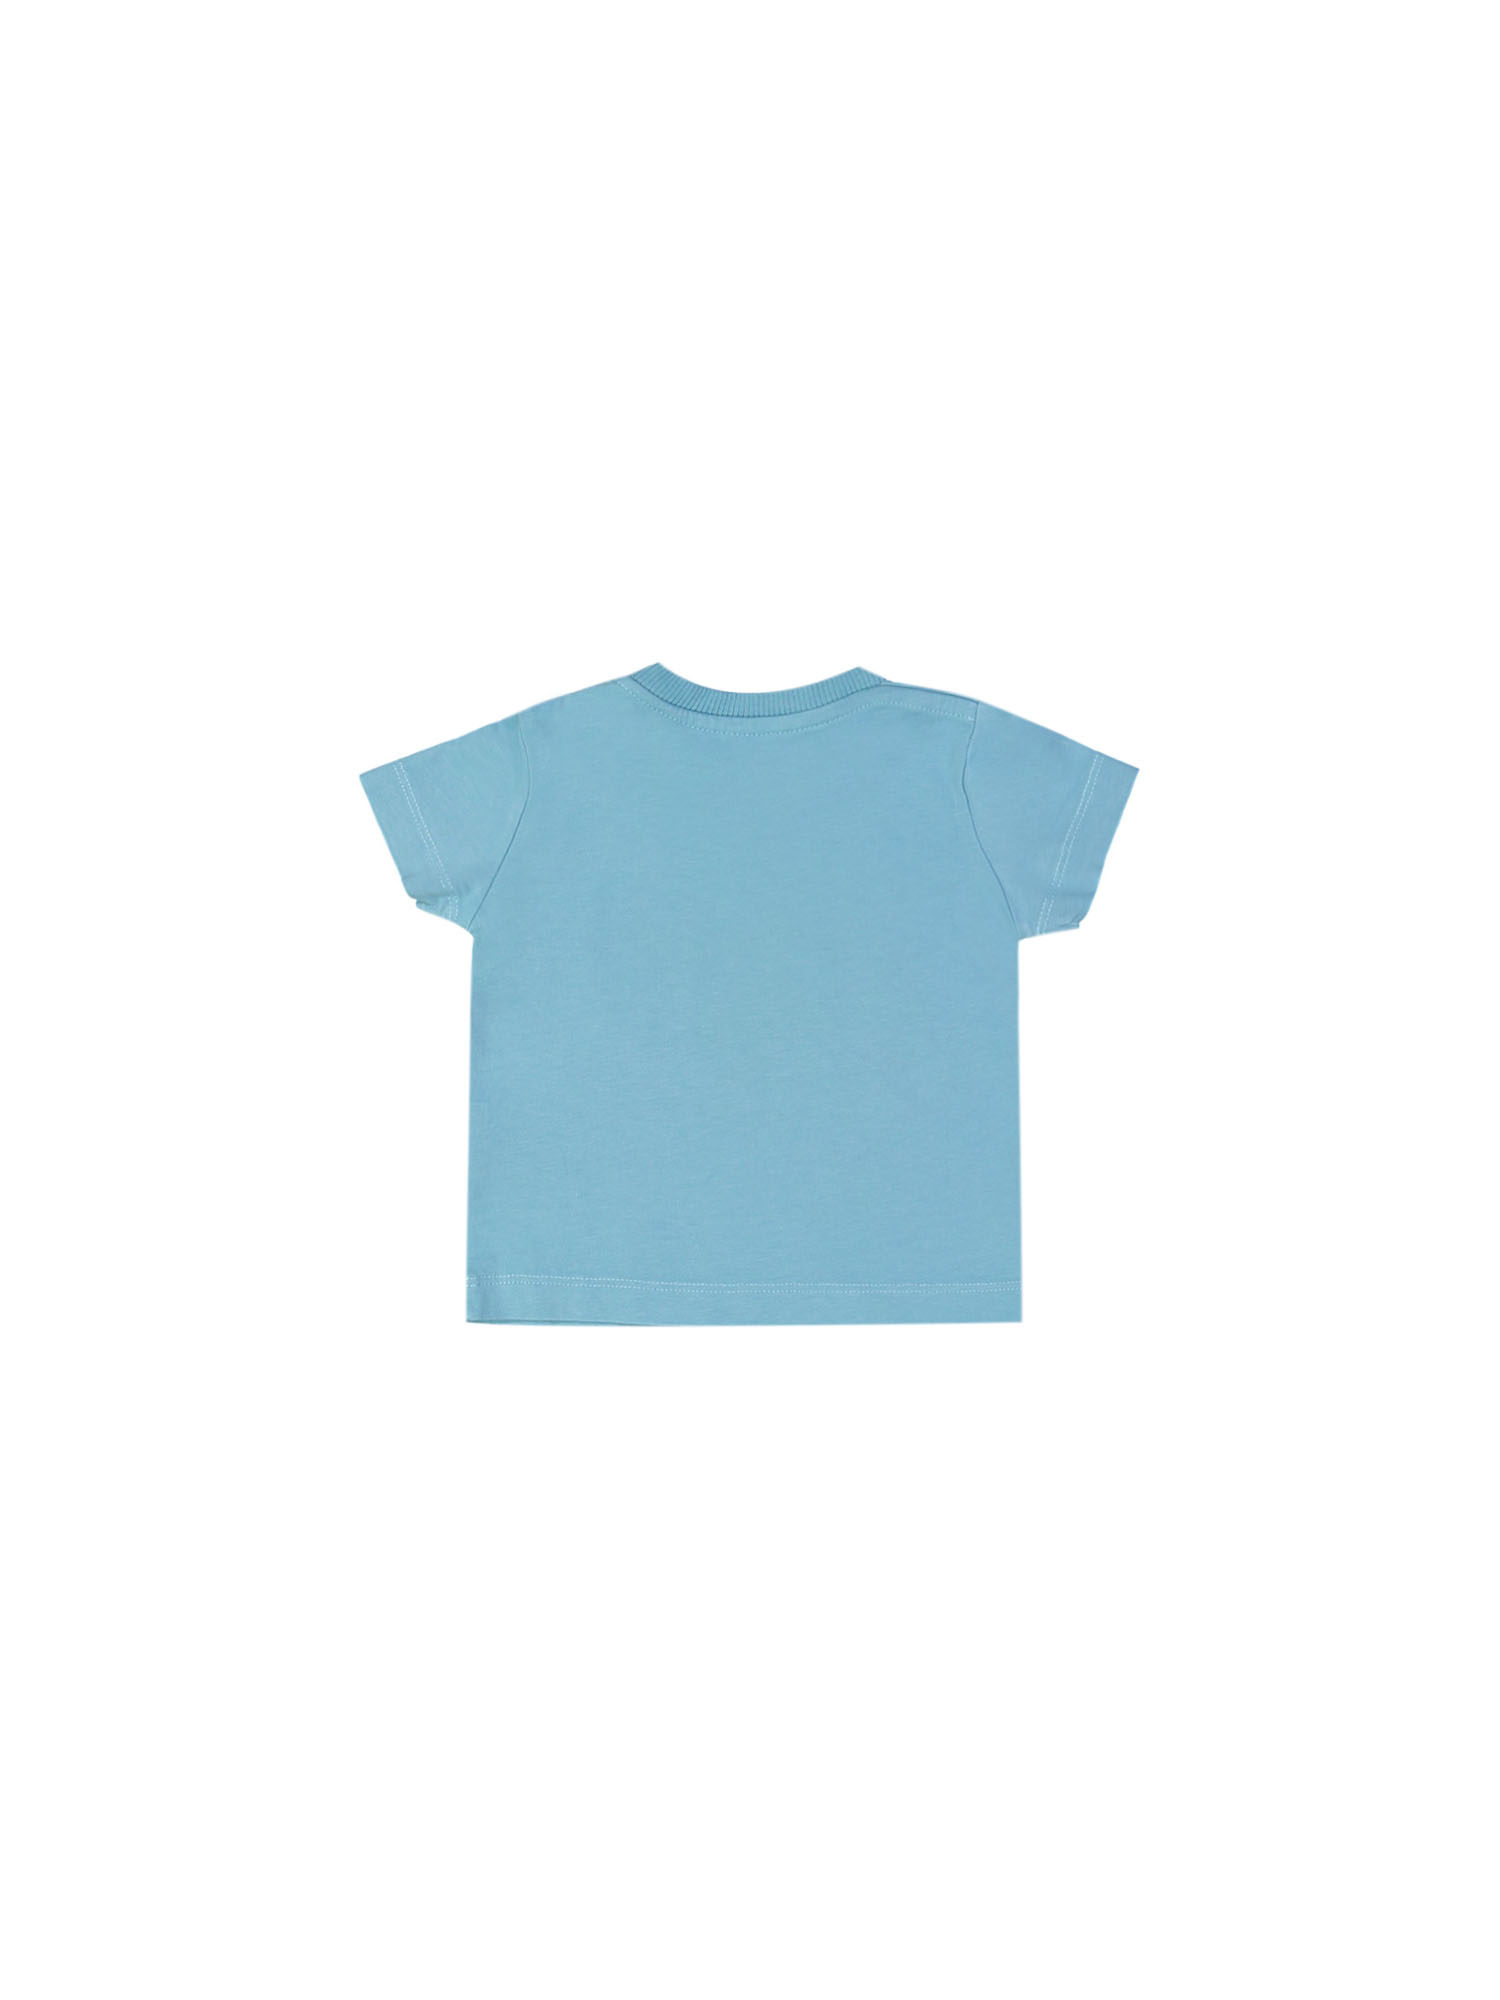 t-shirt mini trophy grijsblauw 18m